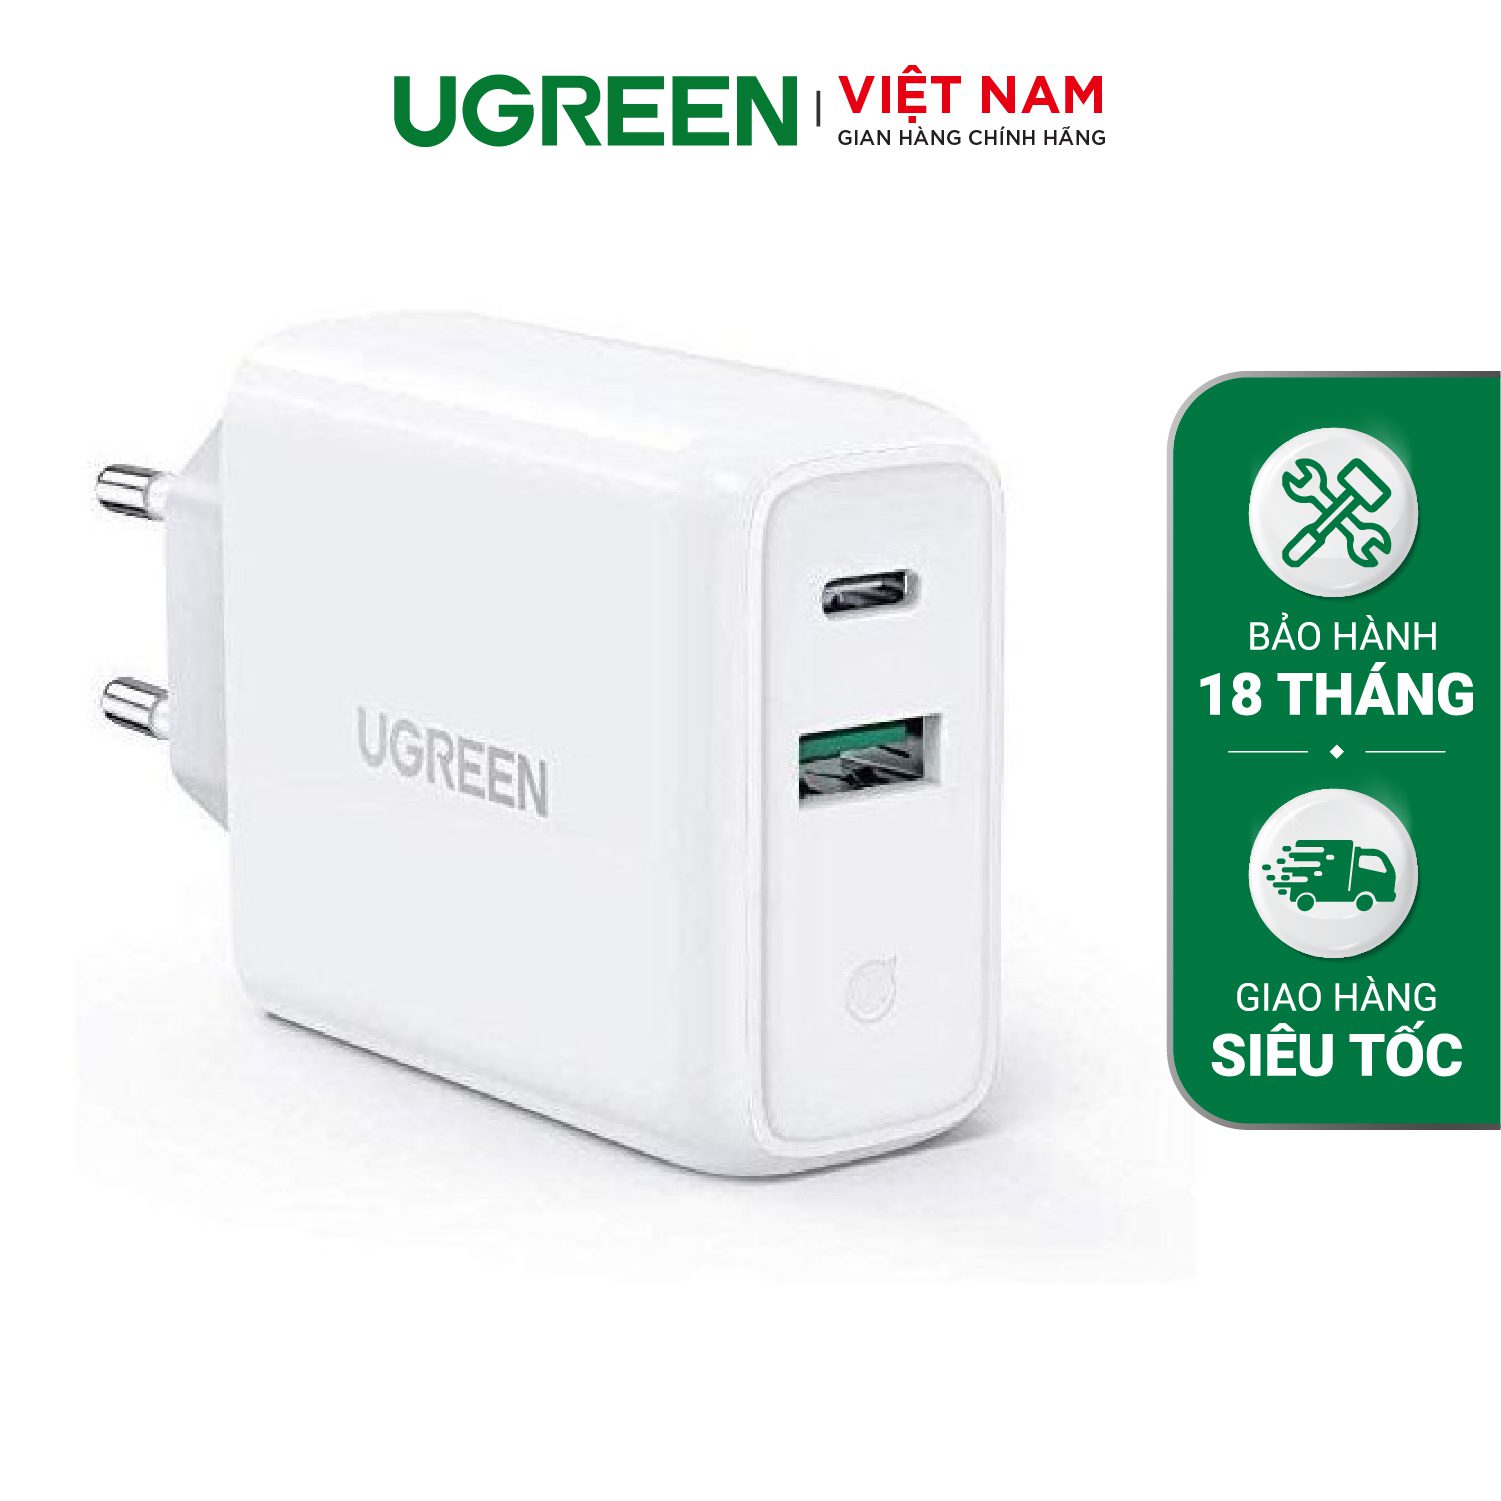 Củ sạc nhanh Ugreen 2 cổng 36W - Sạc nhanh đồng thời 2 thiết bị – Ugreen Việt Nam